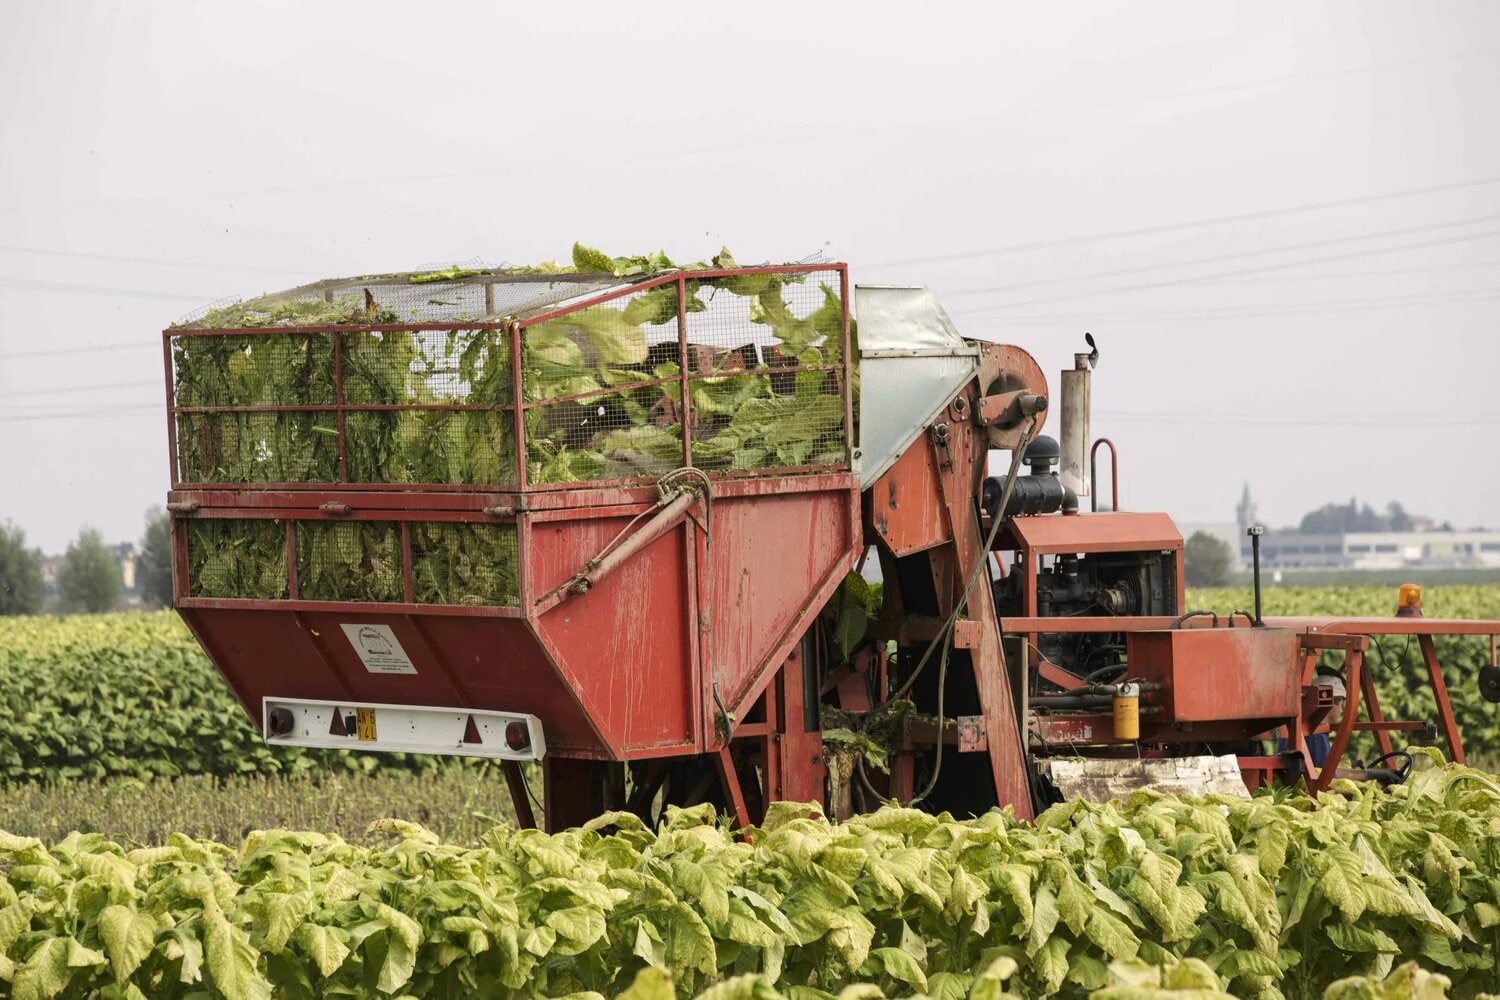 A tobacco harvesting machine in a field.